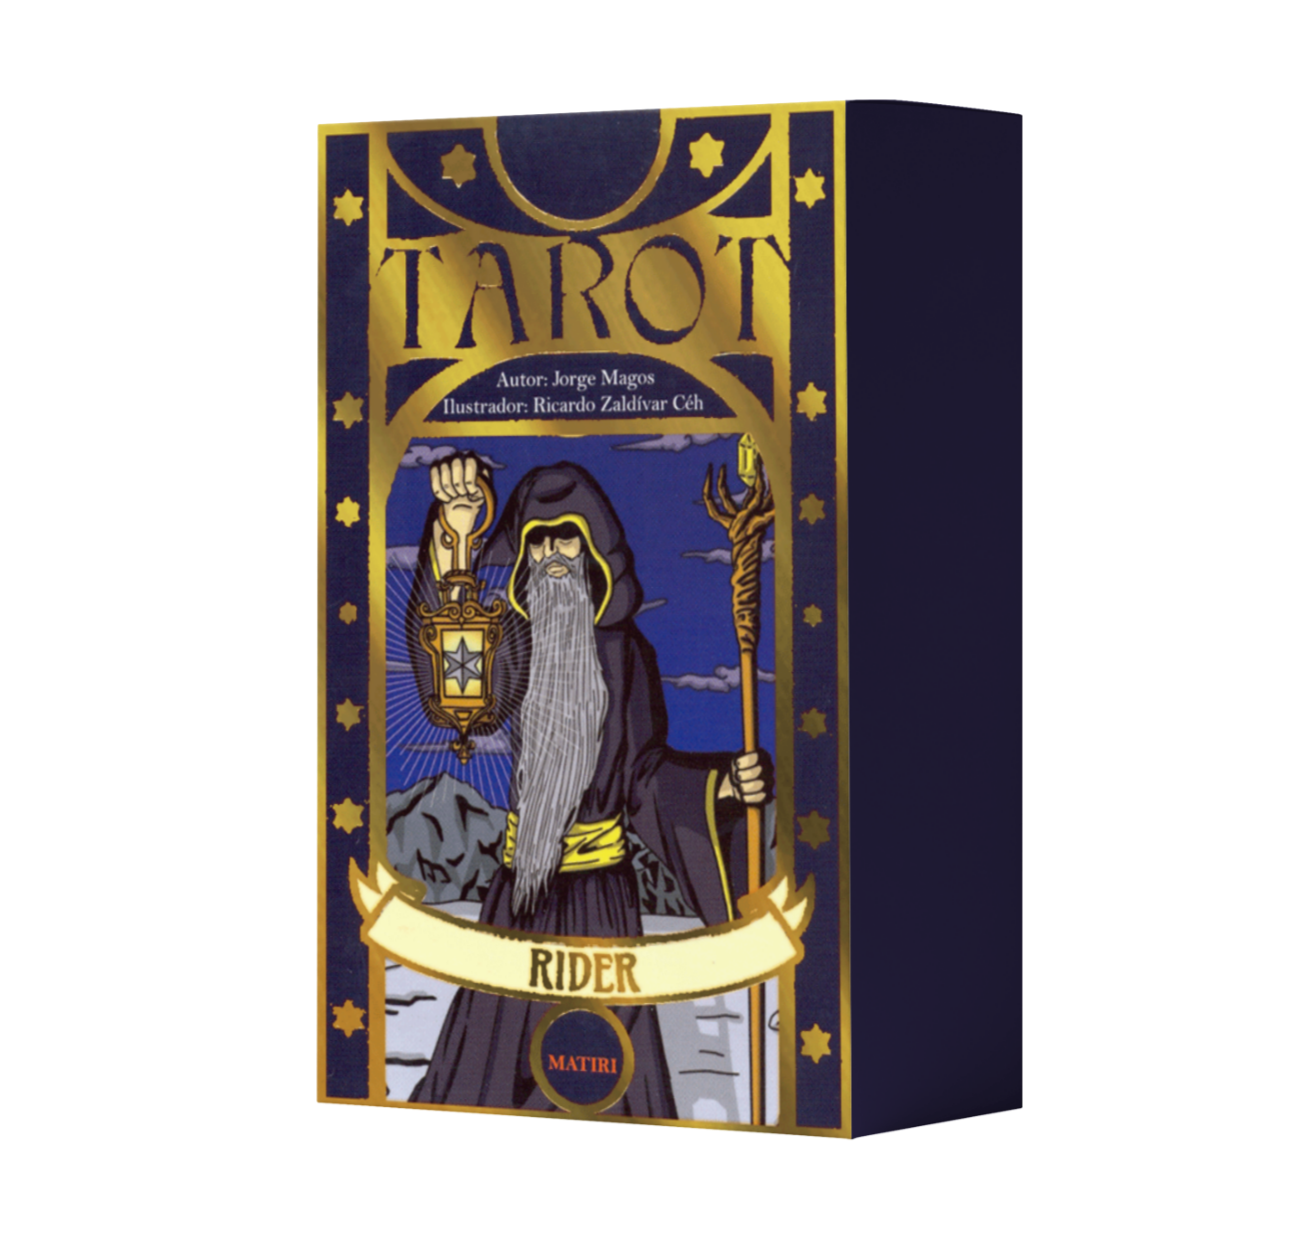 Tarot Rider - Jorge Magos